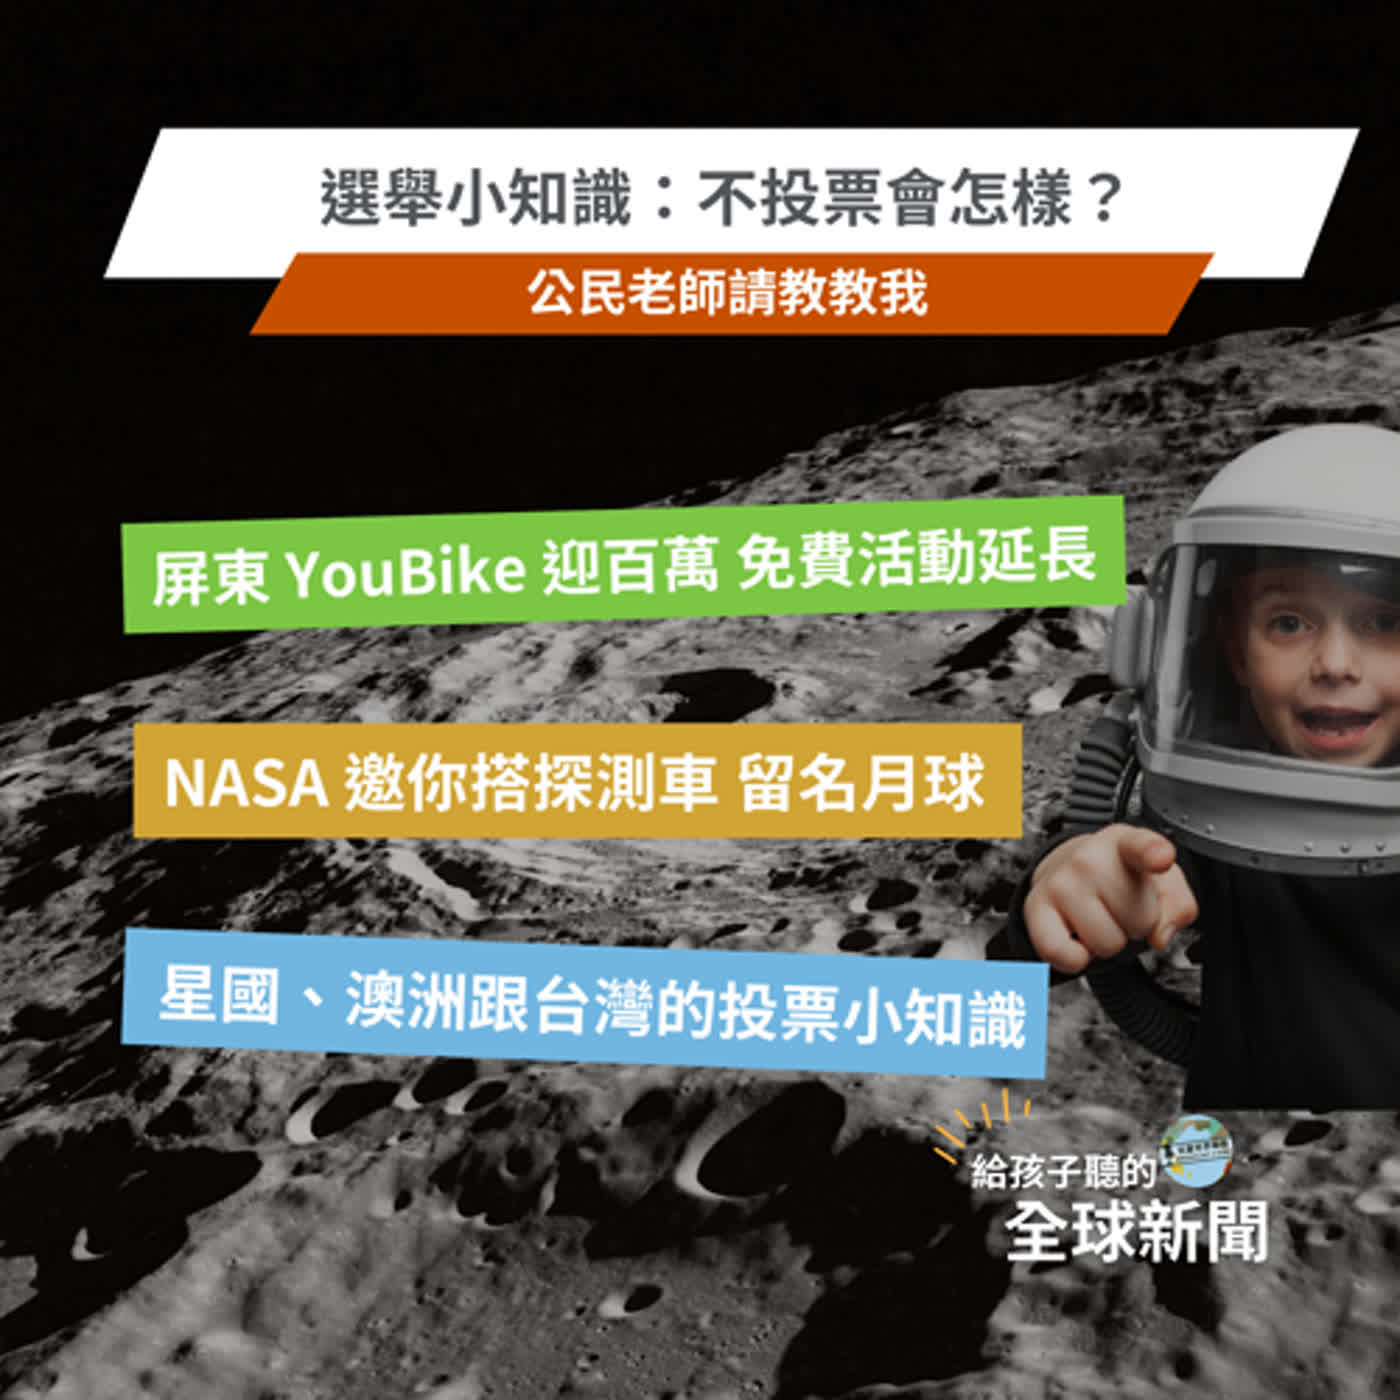 【國際新聞】屏東YouBike｜NASA邀你名上月球｜選舉小知識：不投票會怎樣？新加坡、澳洲會被罰，還有香腸參一咖